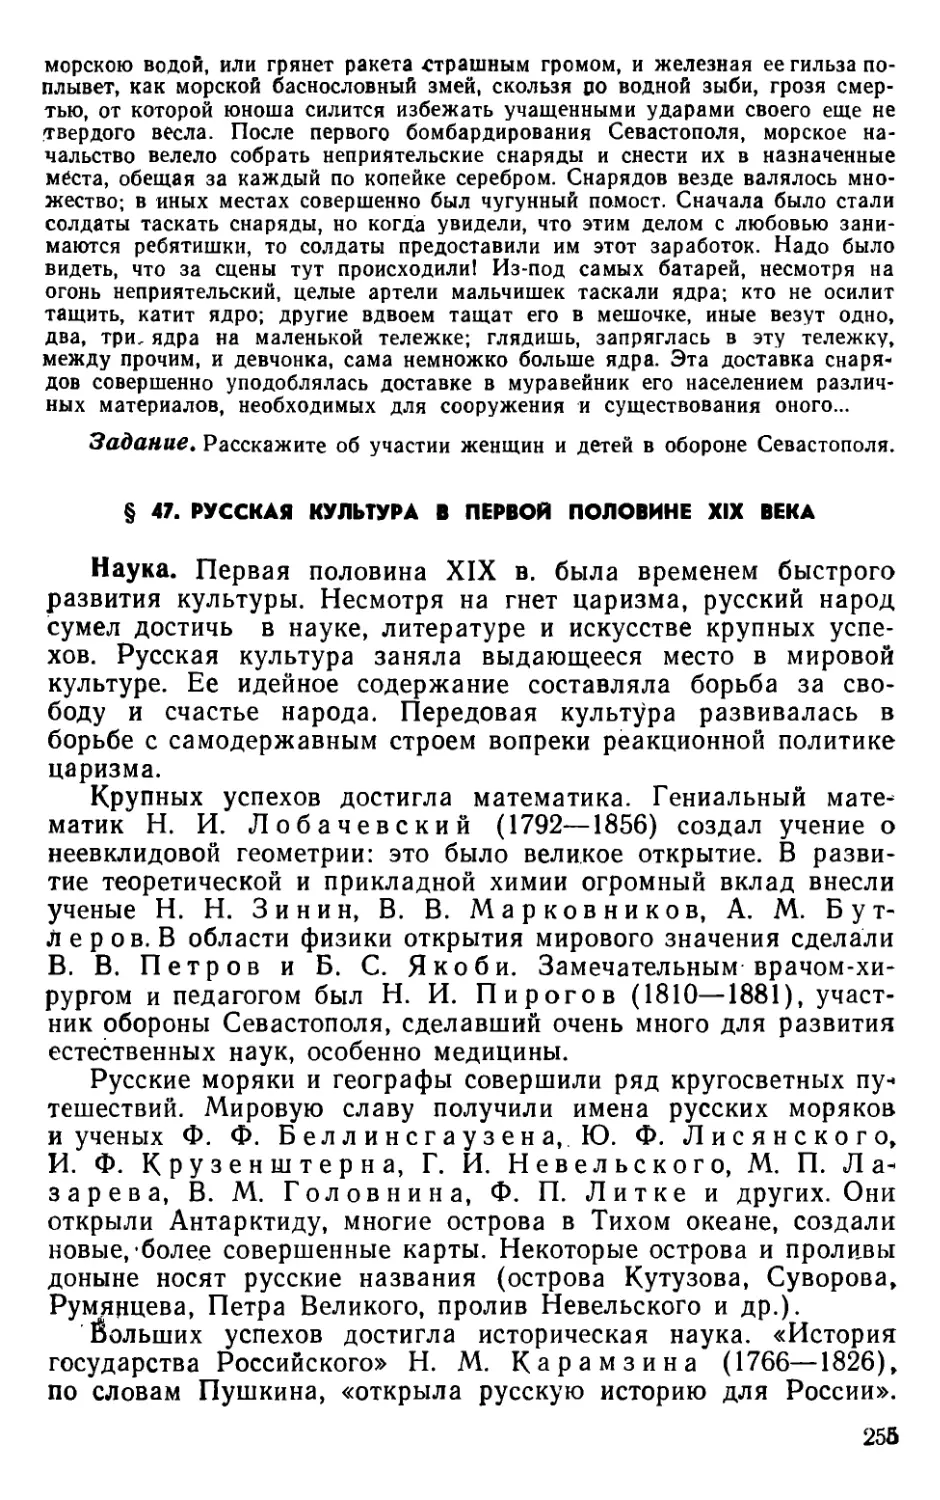 § 47. Русская культура в первой половине XIX века